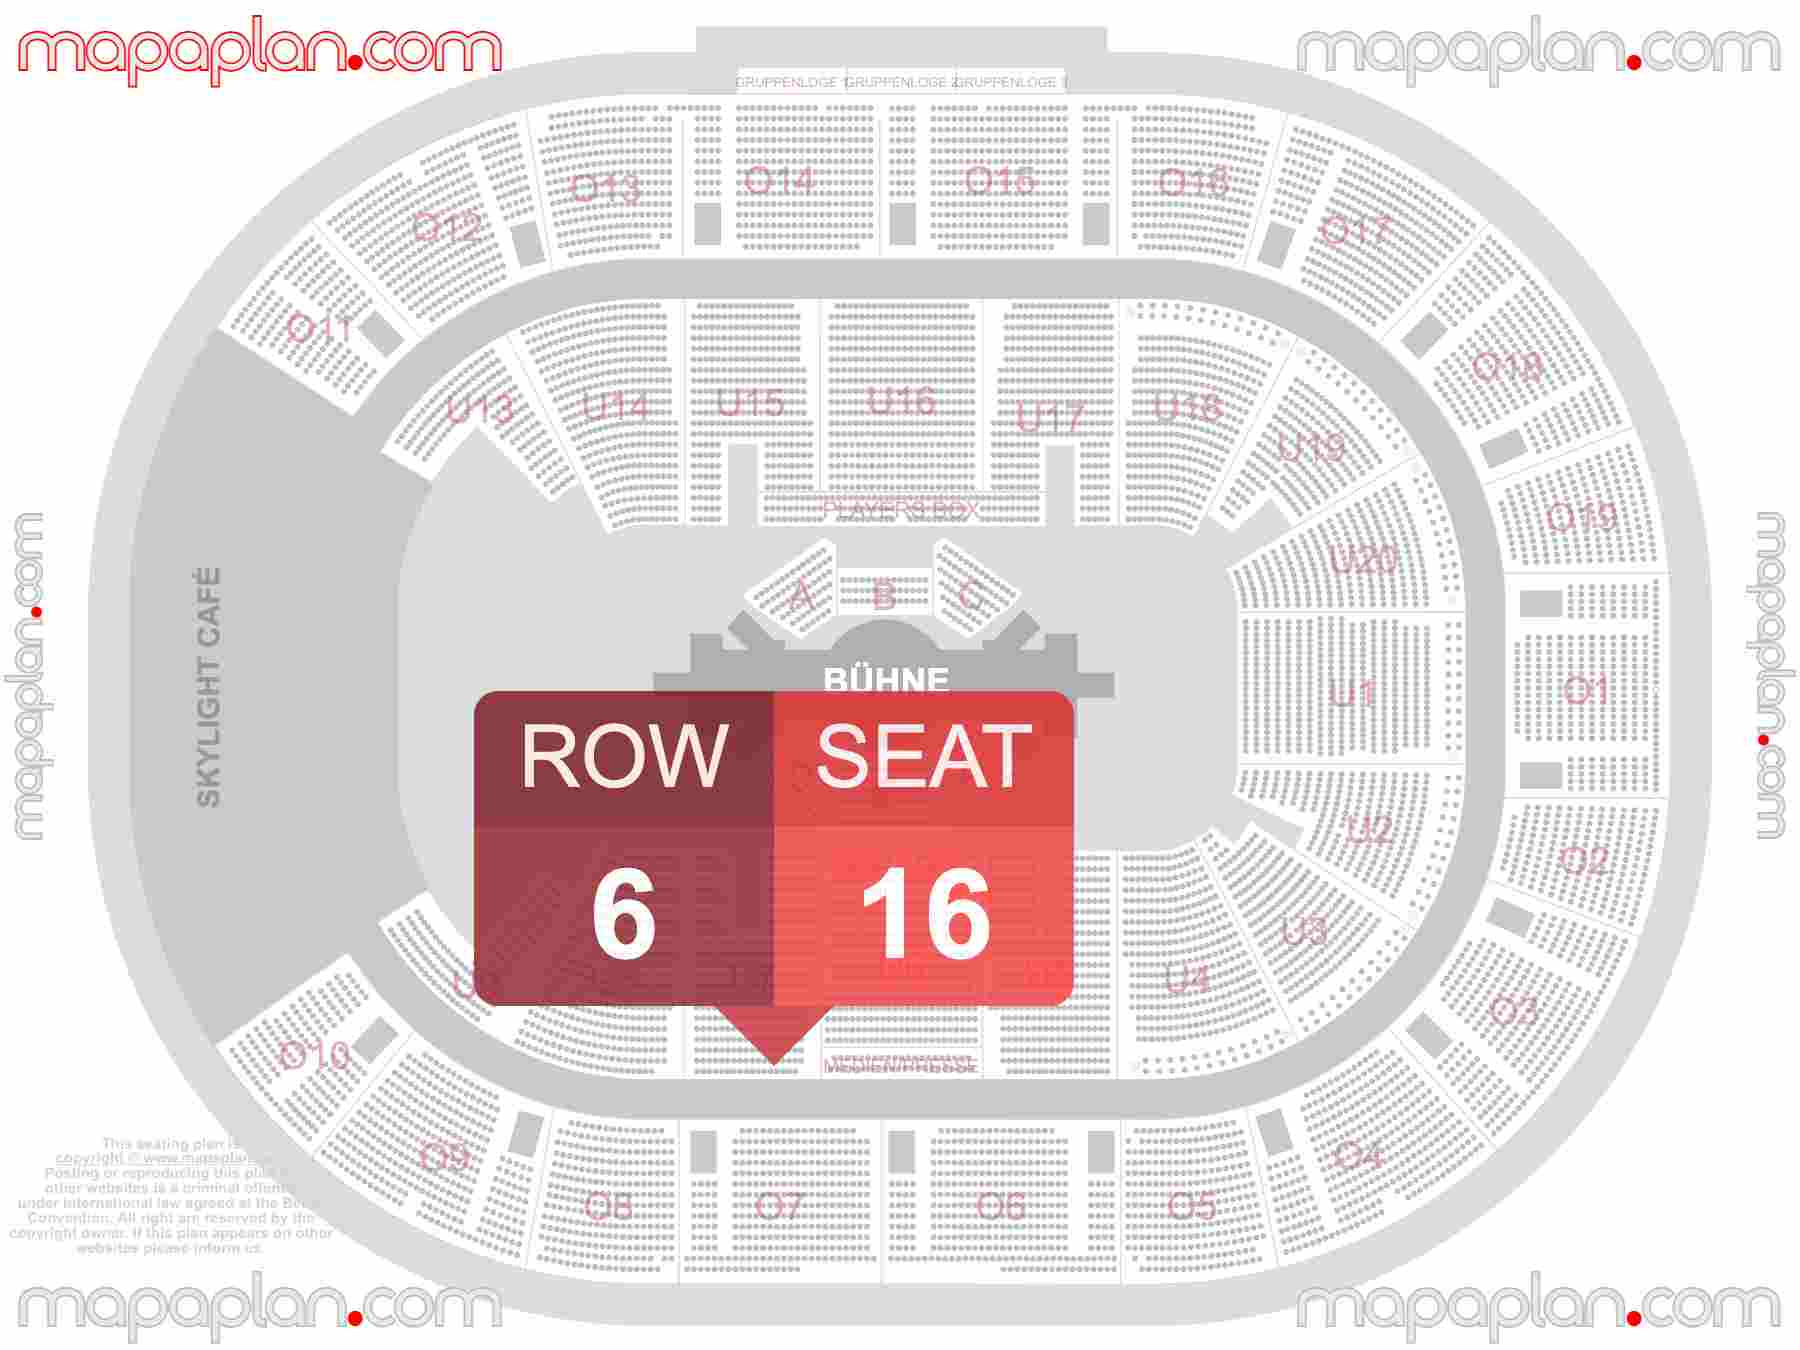 Hamburg Barclays Arena seating plan Concert 360 in the round stage Konzerte 360 Sitzplan mit Sitzplatznummerierung und Reihen inside capacity view arrangement map - Interactive virtual 3d best seats & rows detailed stadium image configuration layout